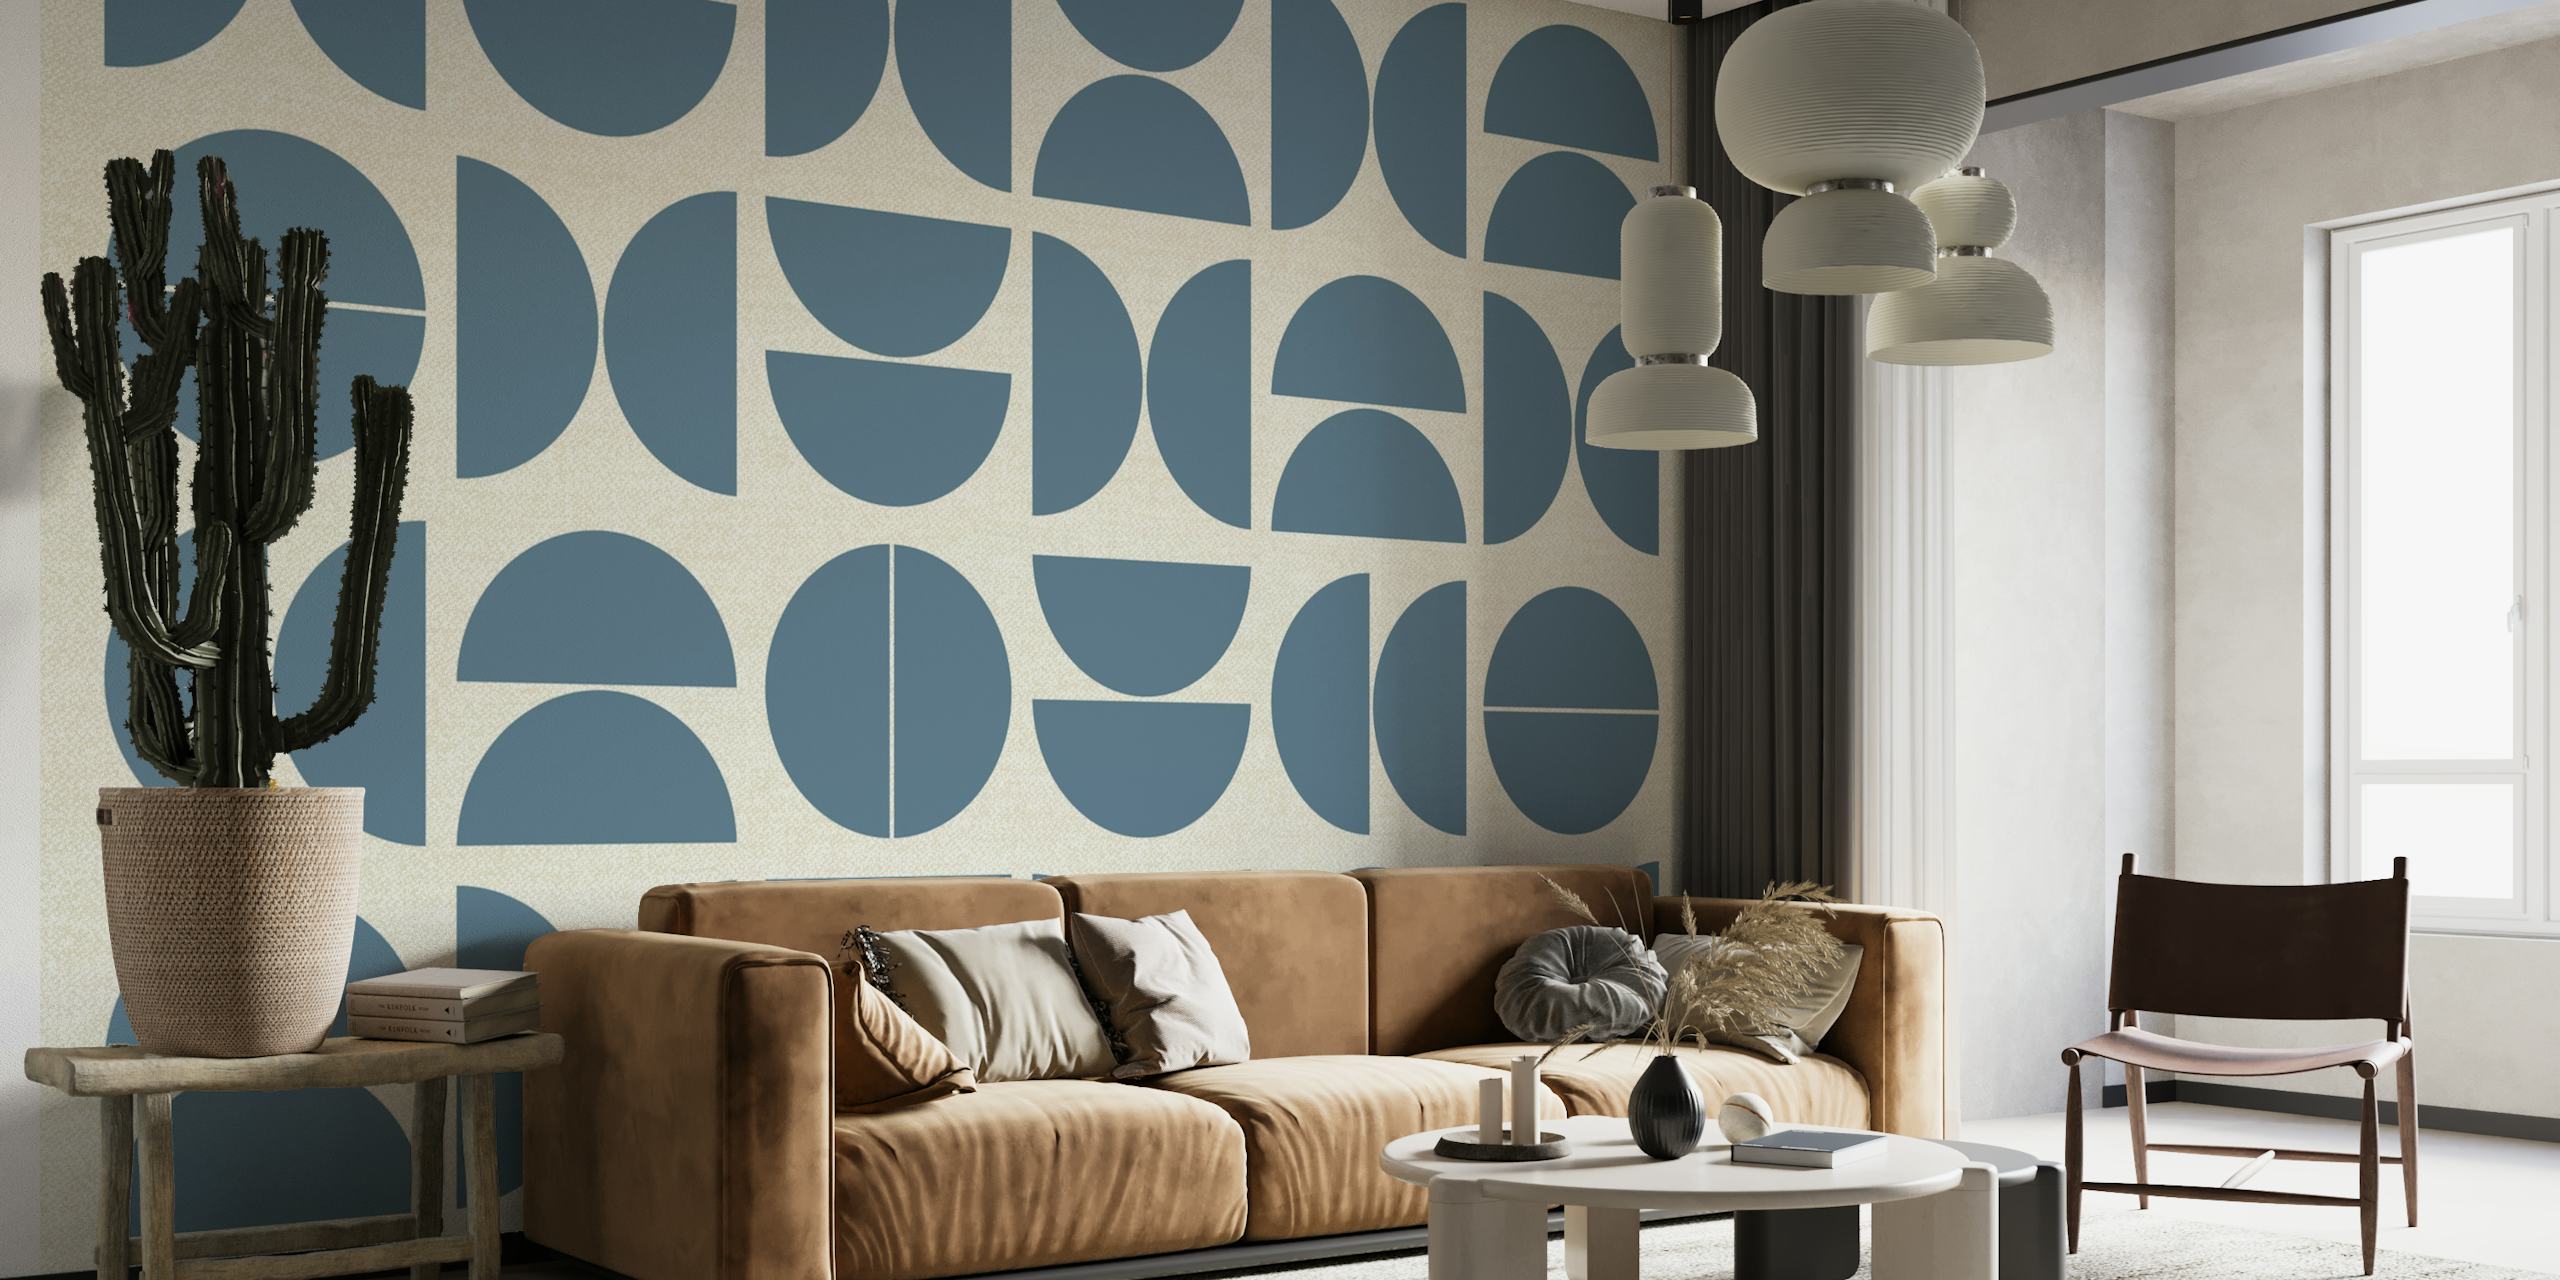 Fotomural abstrato estilo Bauhaus com padrões circulares geométricos em tons de azul